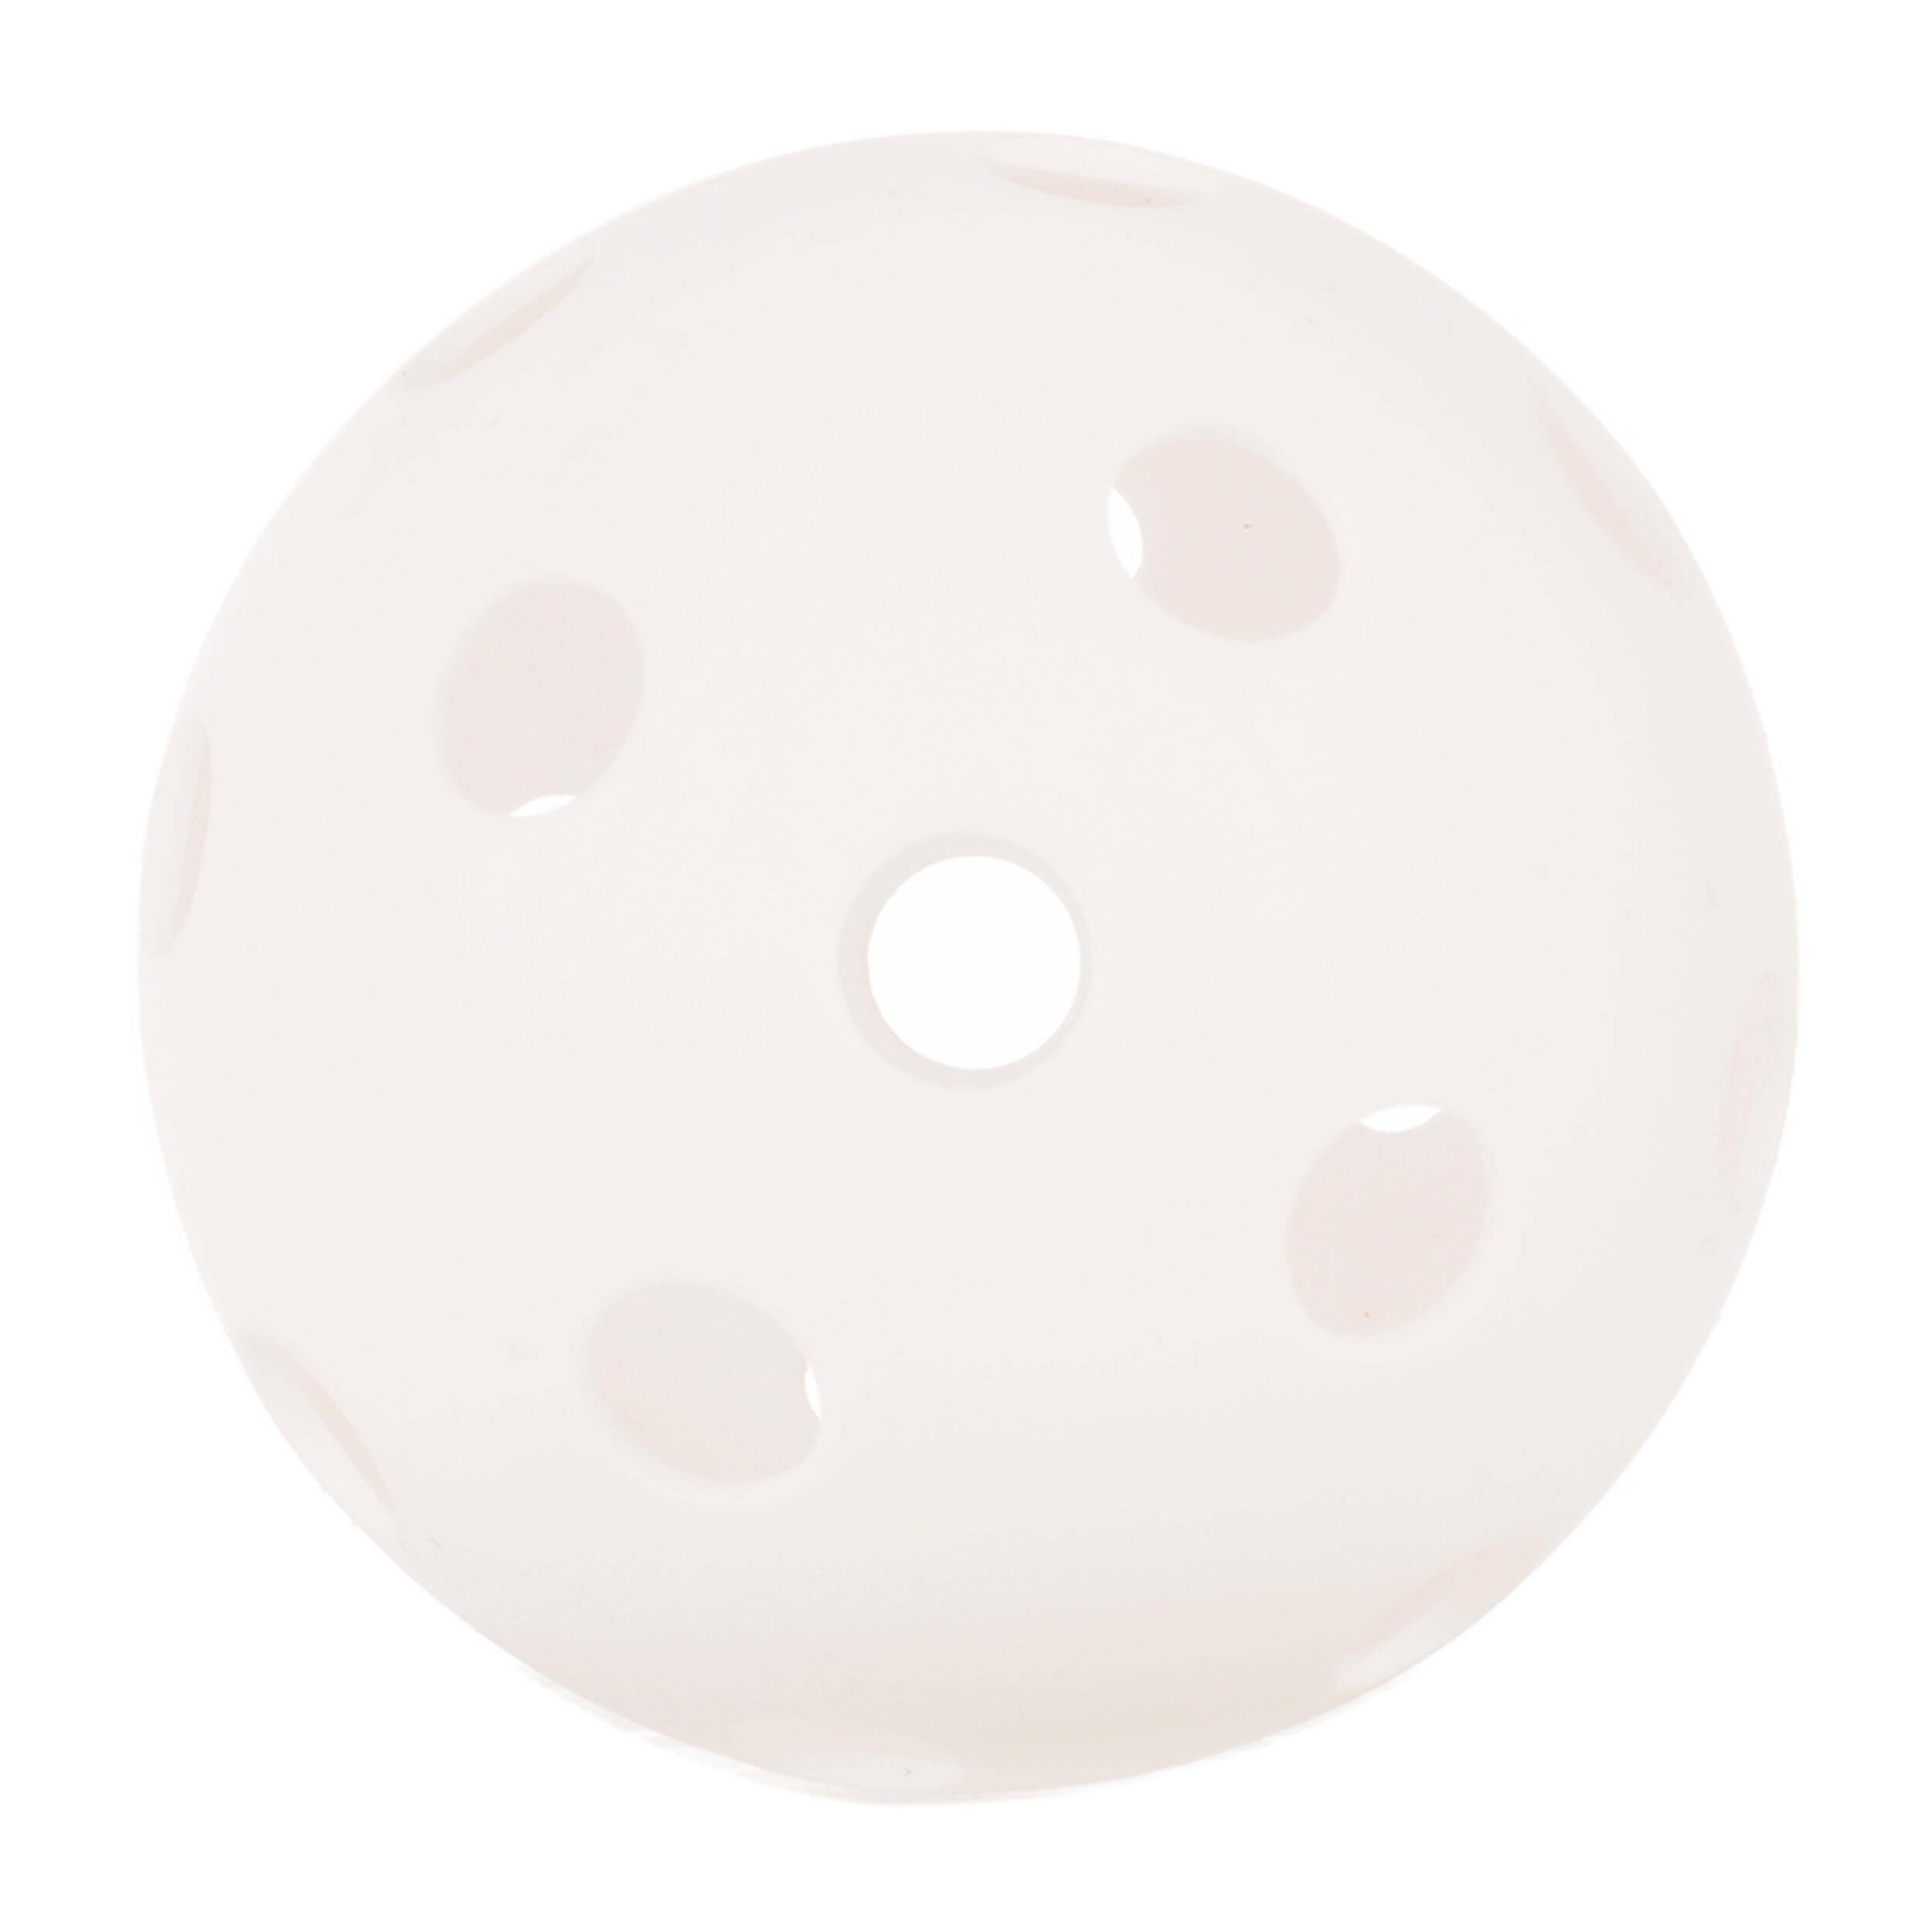 ARTENGO Pickleball Ball - White